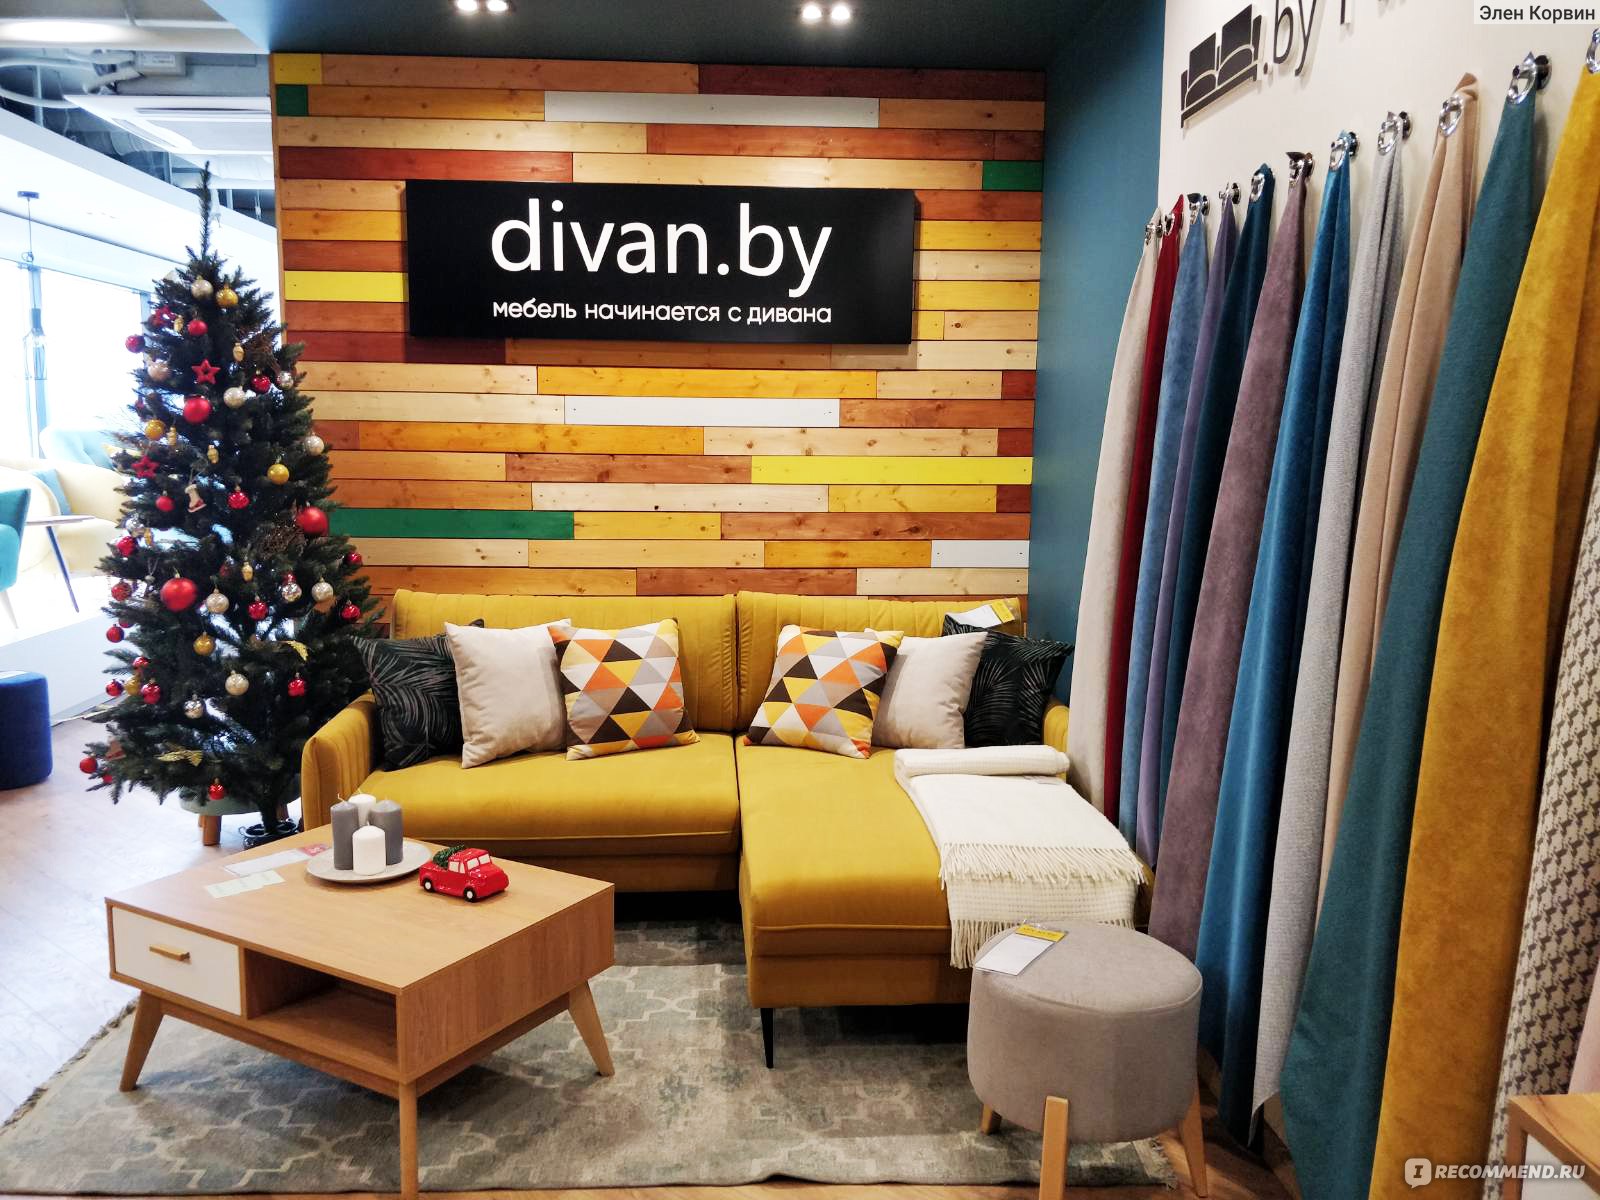 Divanby com мягкая мебель